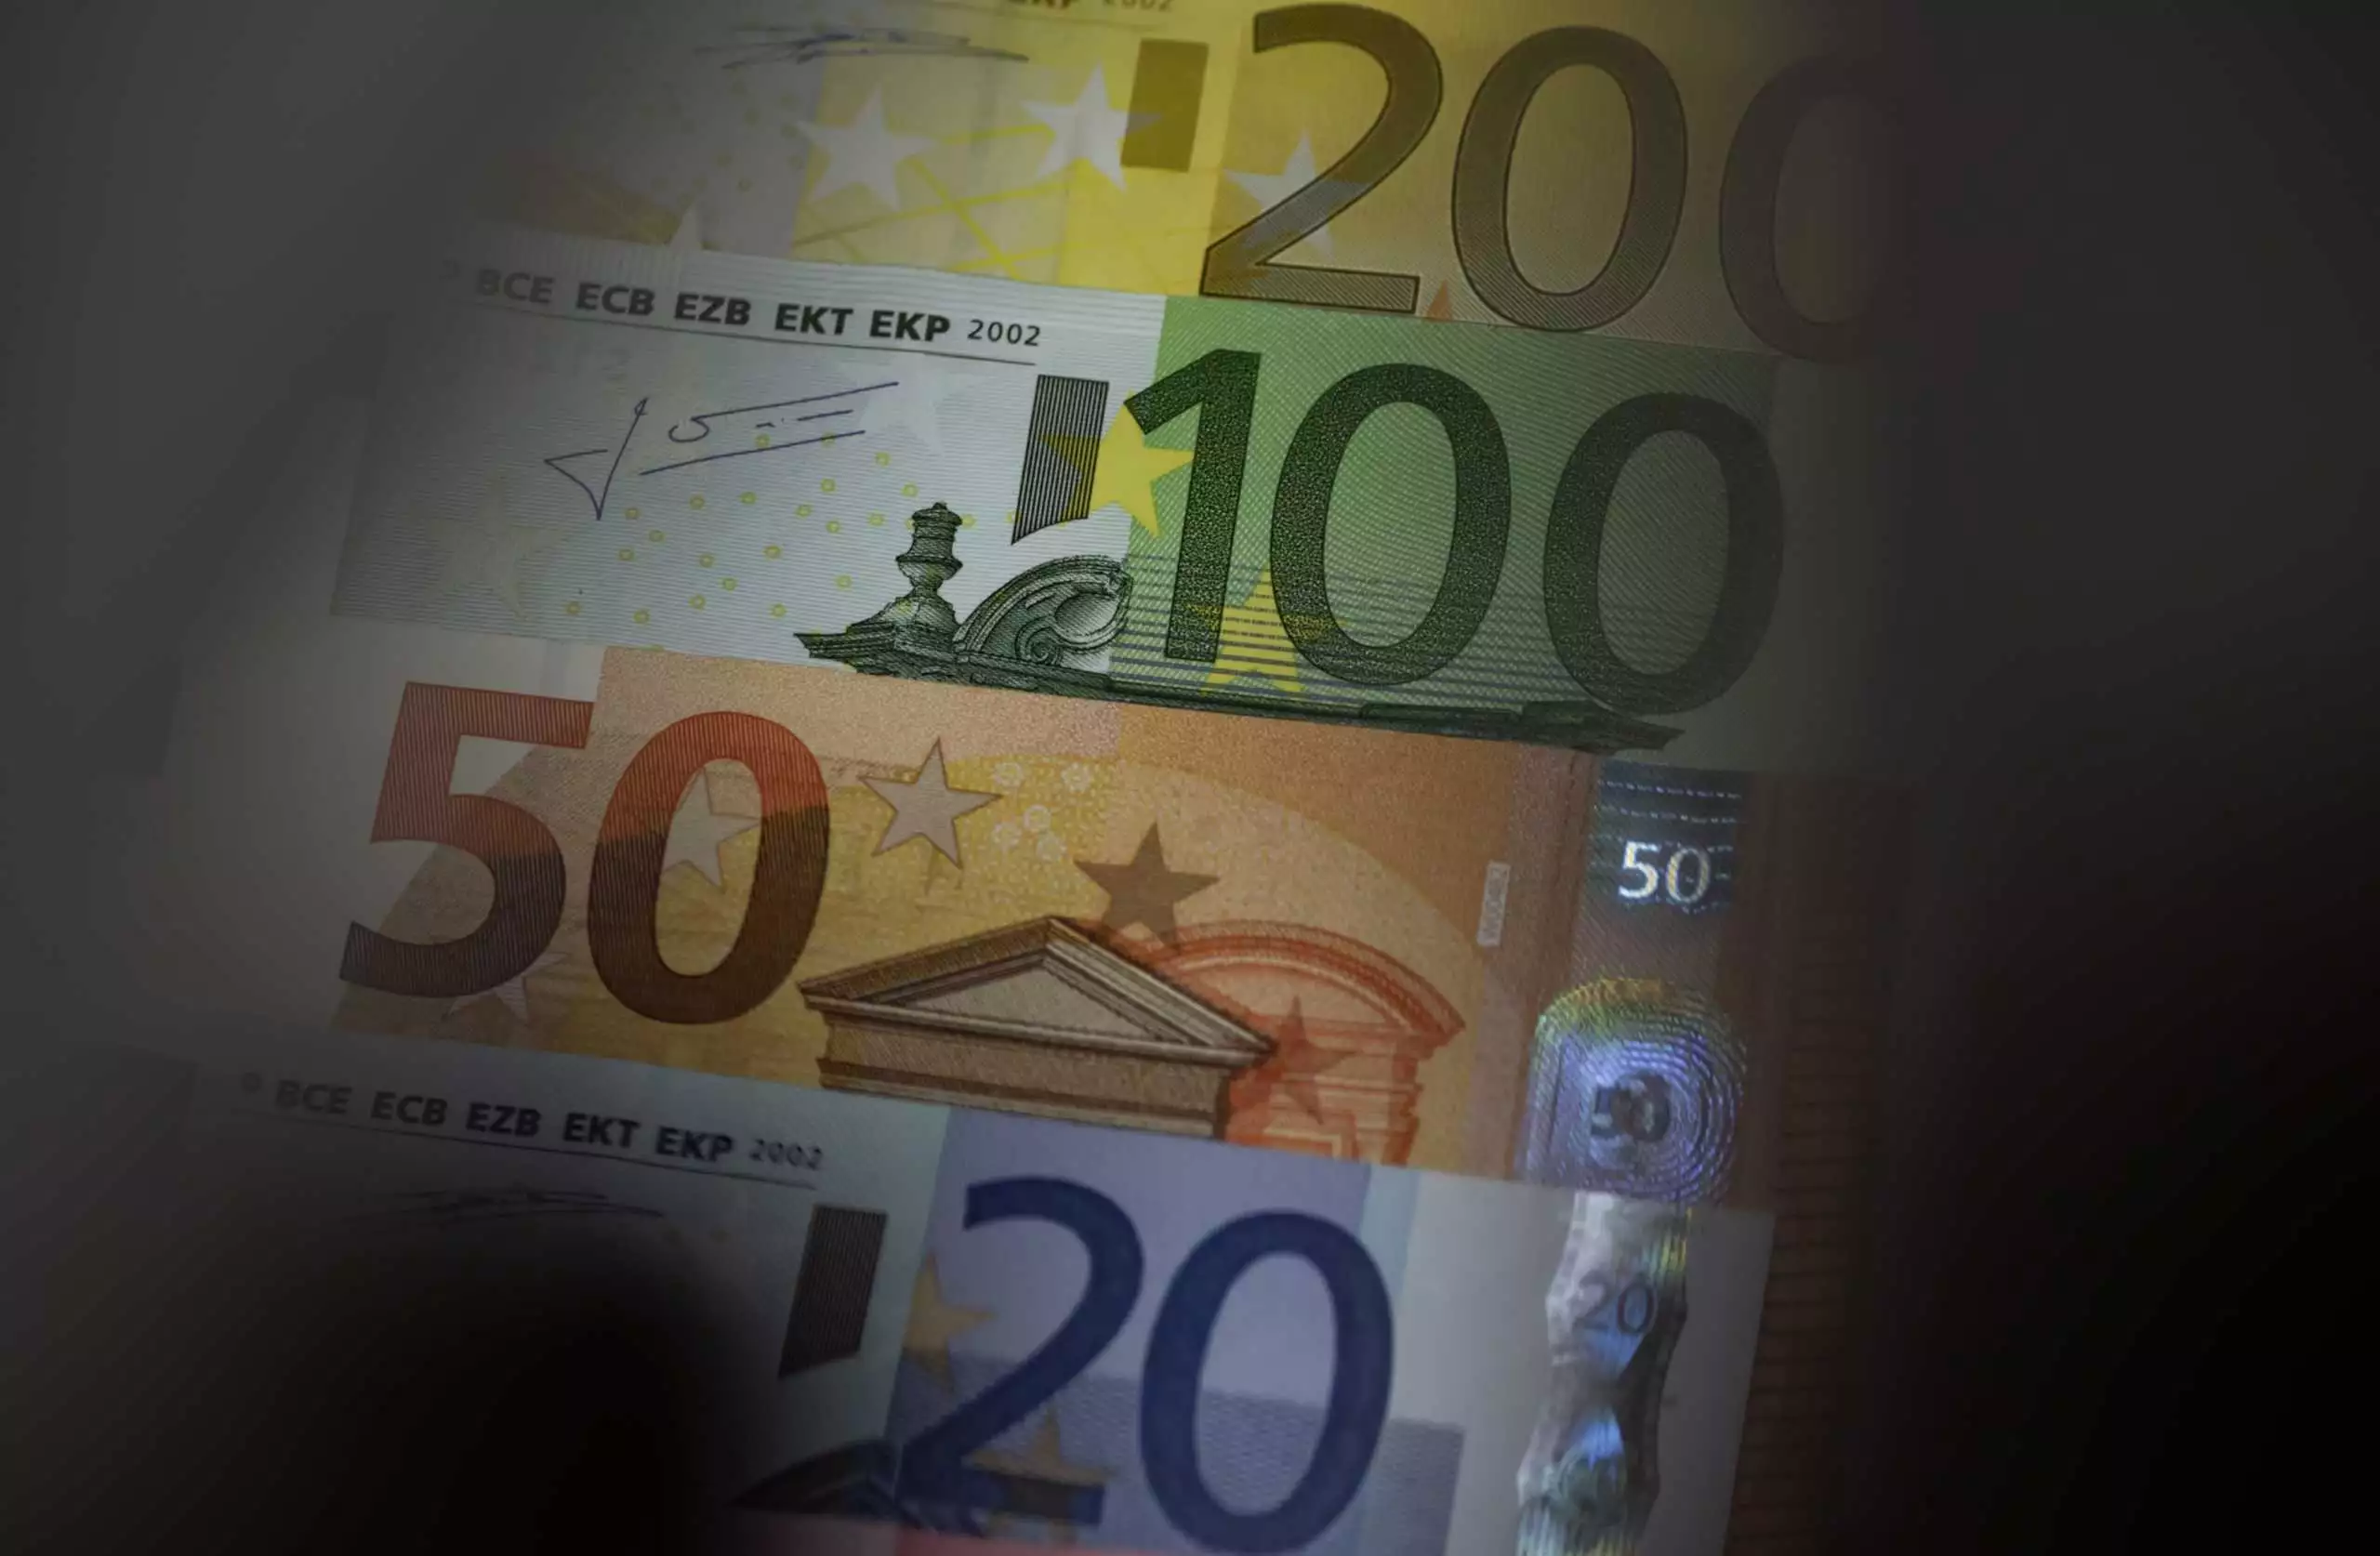 Αποζημίωση 100 ευρώ για κάθε μήνα καθυστέρησης στην έκδοση επικουρικής σύνταξης